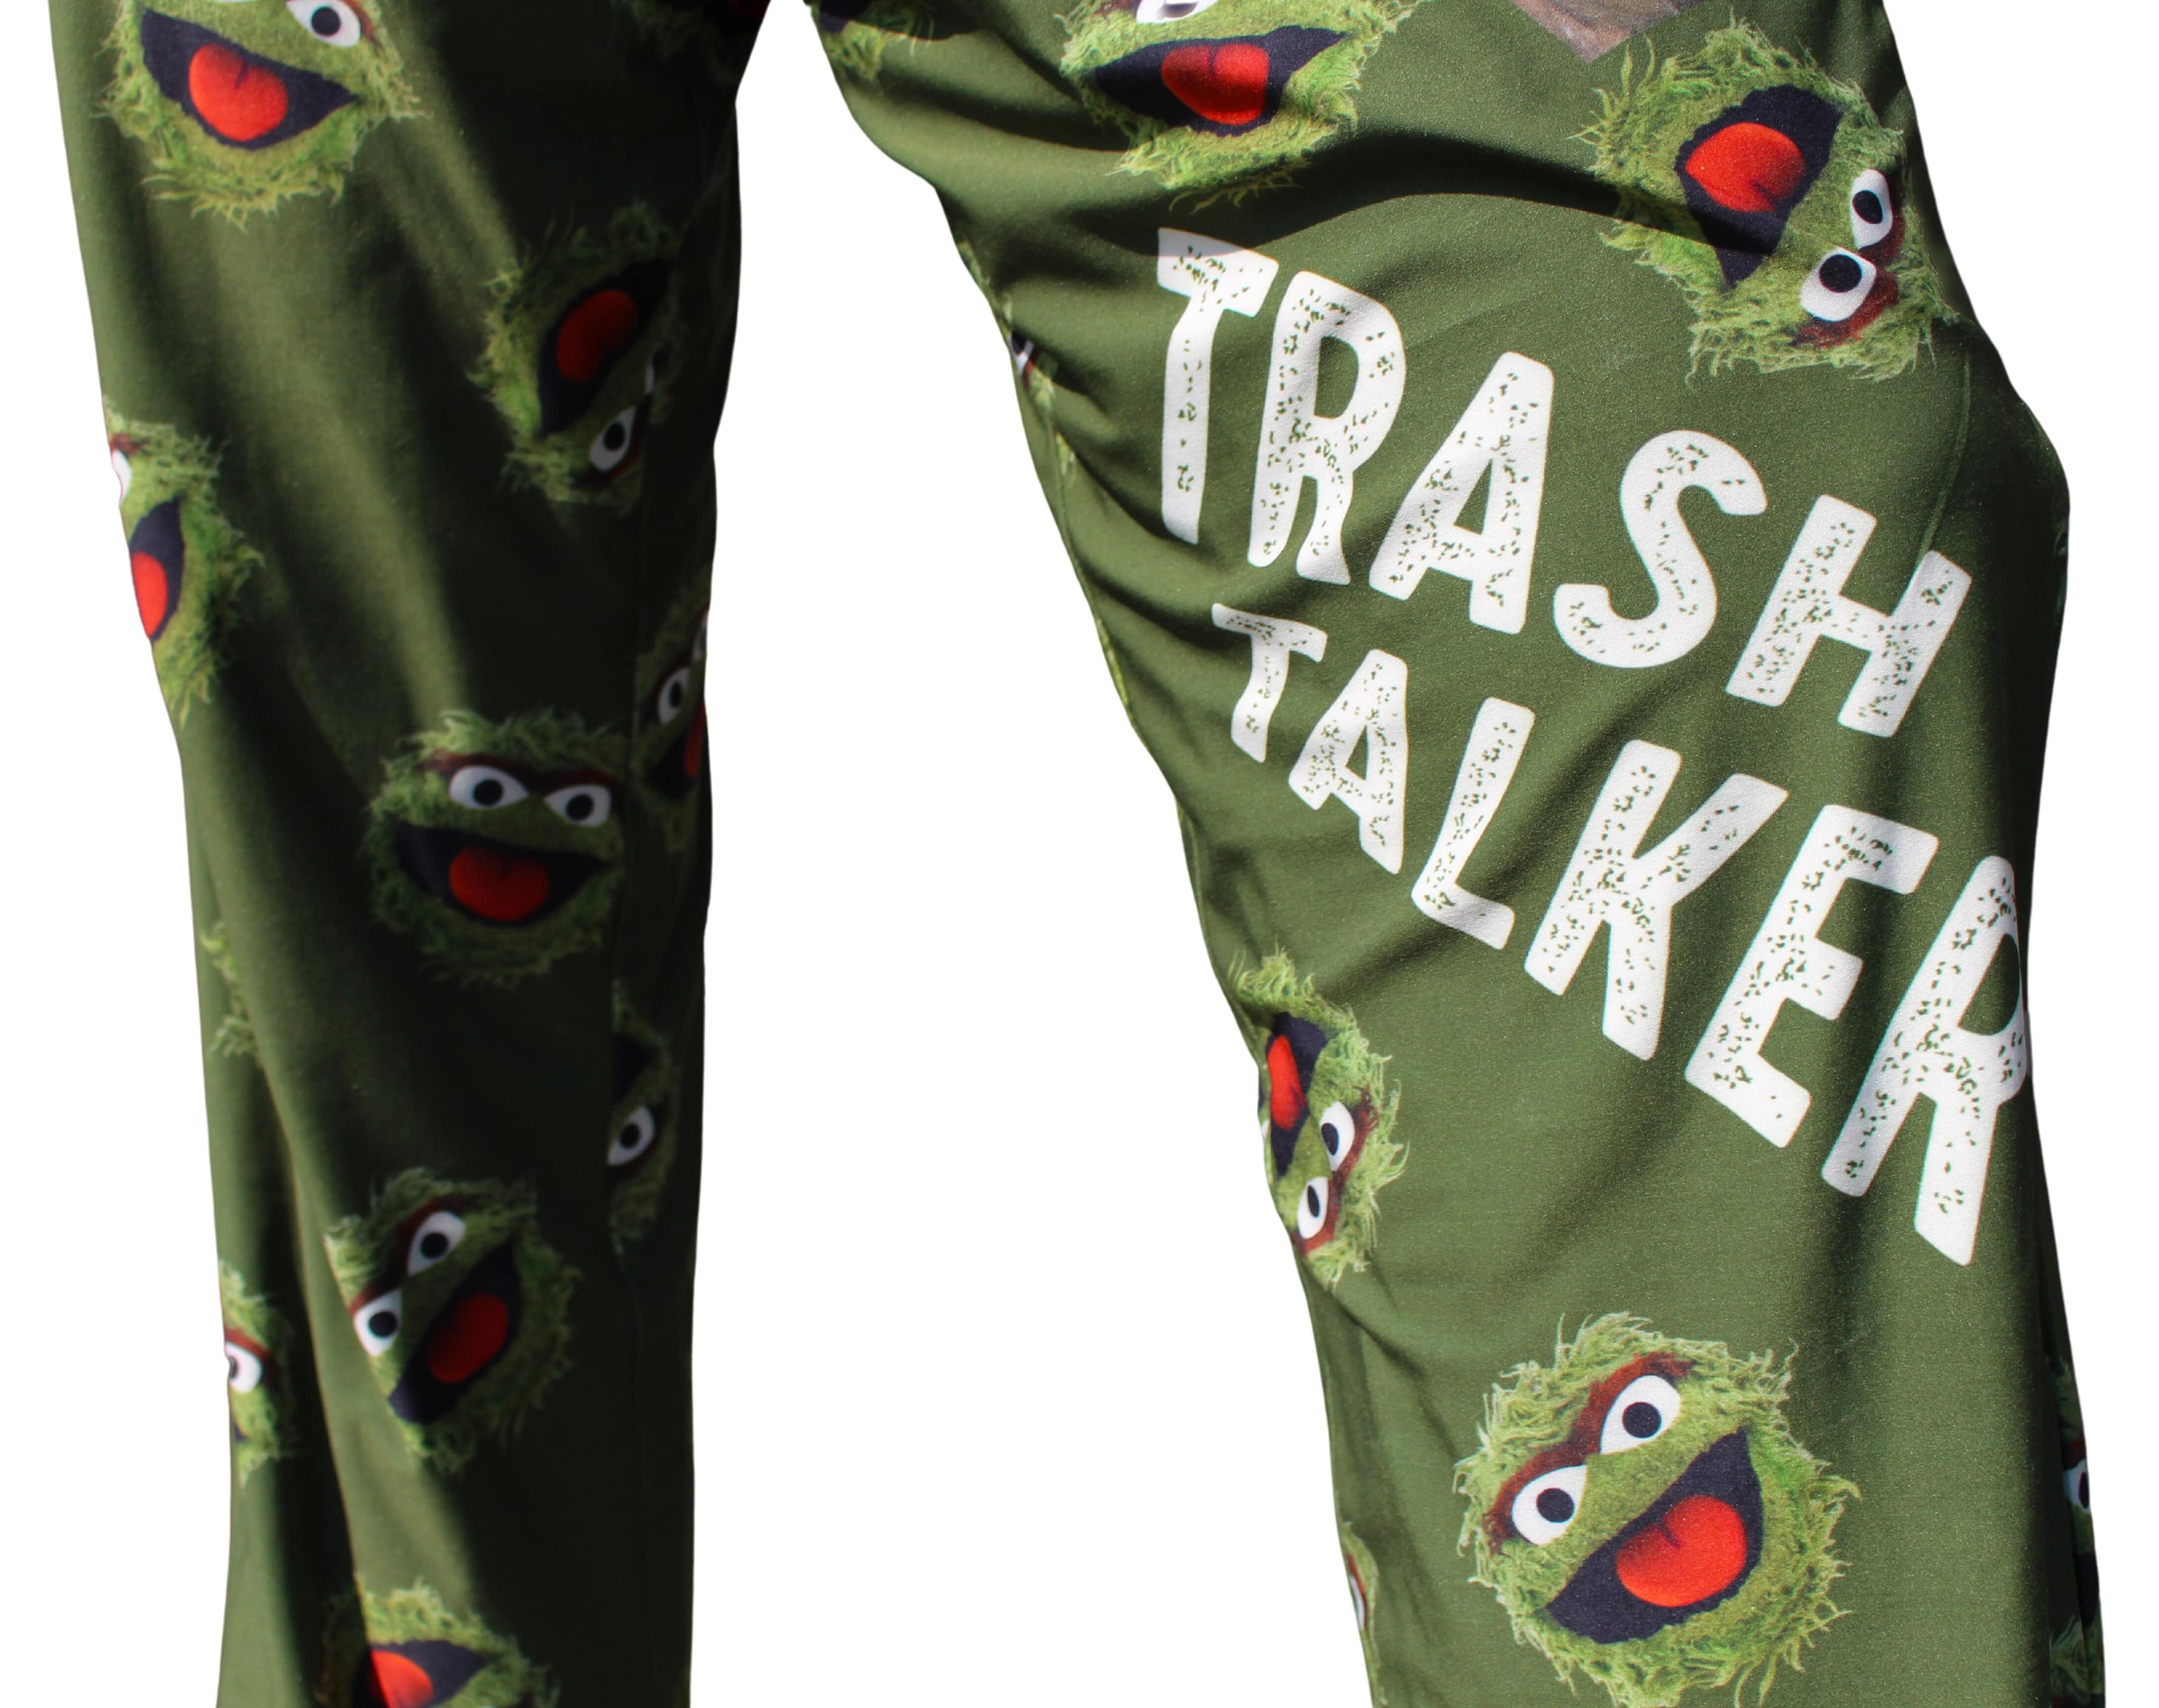 Trash Talker Pajama Lounge Pants close up of "trash talker" text on left pant leg